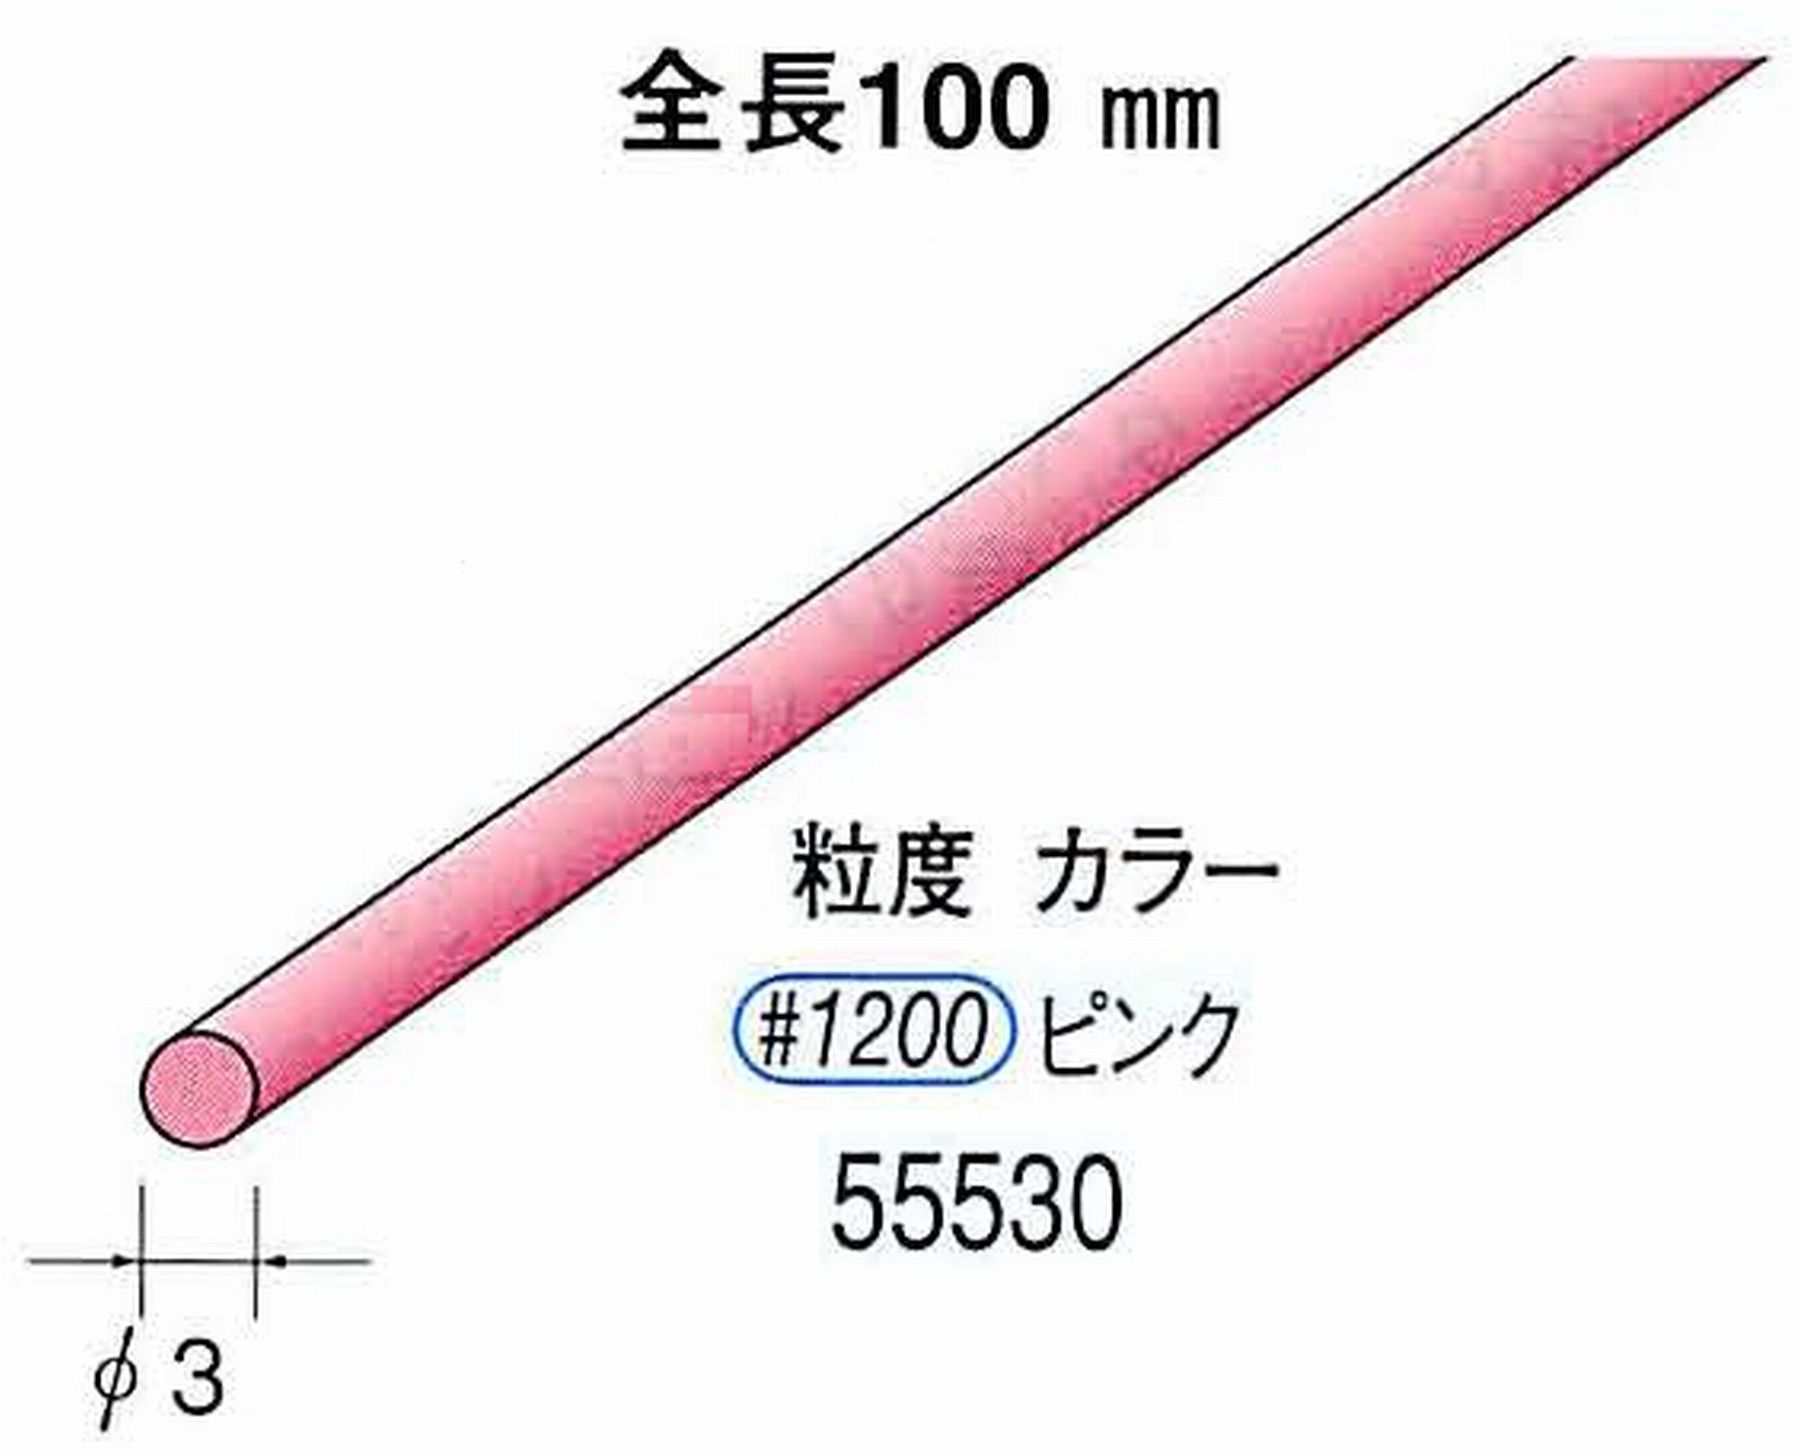 ナカニシ/NAKANISHI セラファイバー砥石 全長100mm ピンク φ3mm 55530